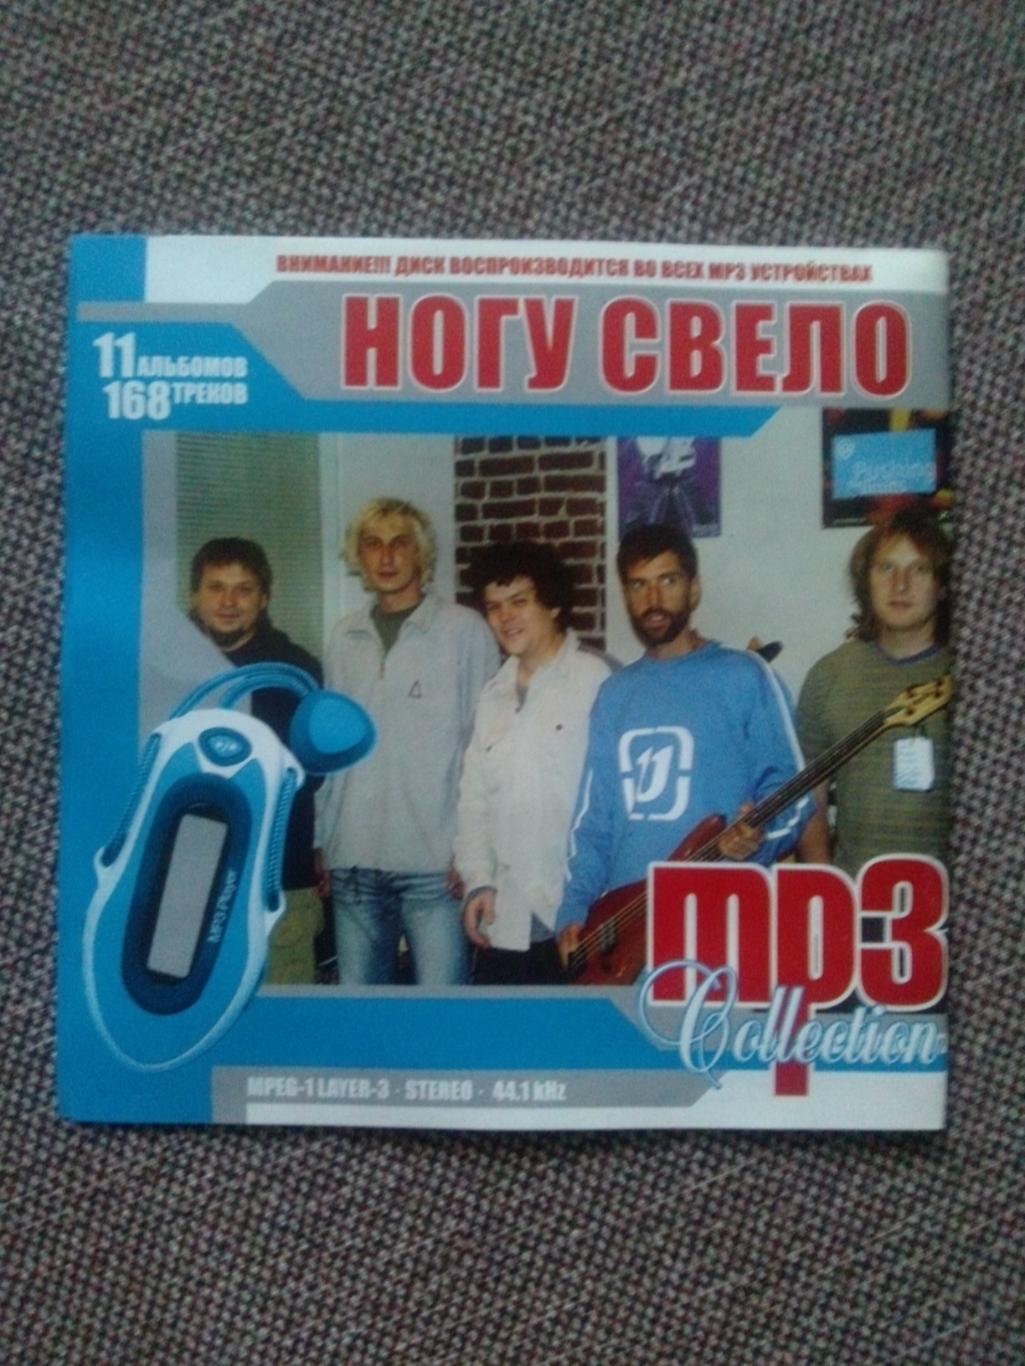 MP - 3 CD диск : группаНогу свело1991 - 2005 гг. 11 альбомов Рок - музыка 1